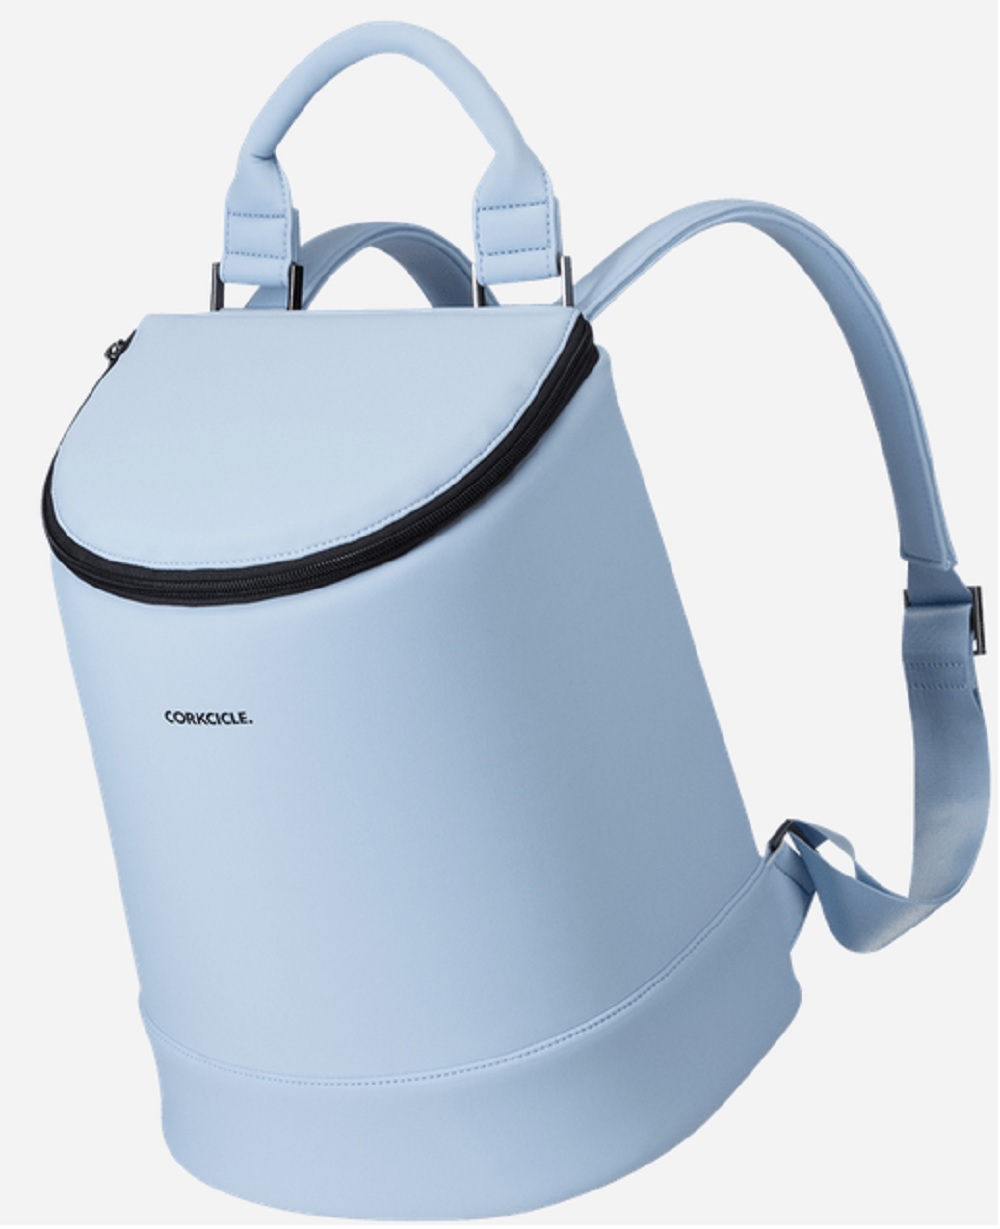 Corkcicle Periwinkle Neoprene Eola Bucket Cooler Bag